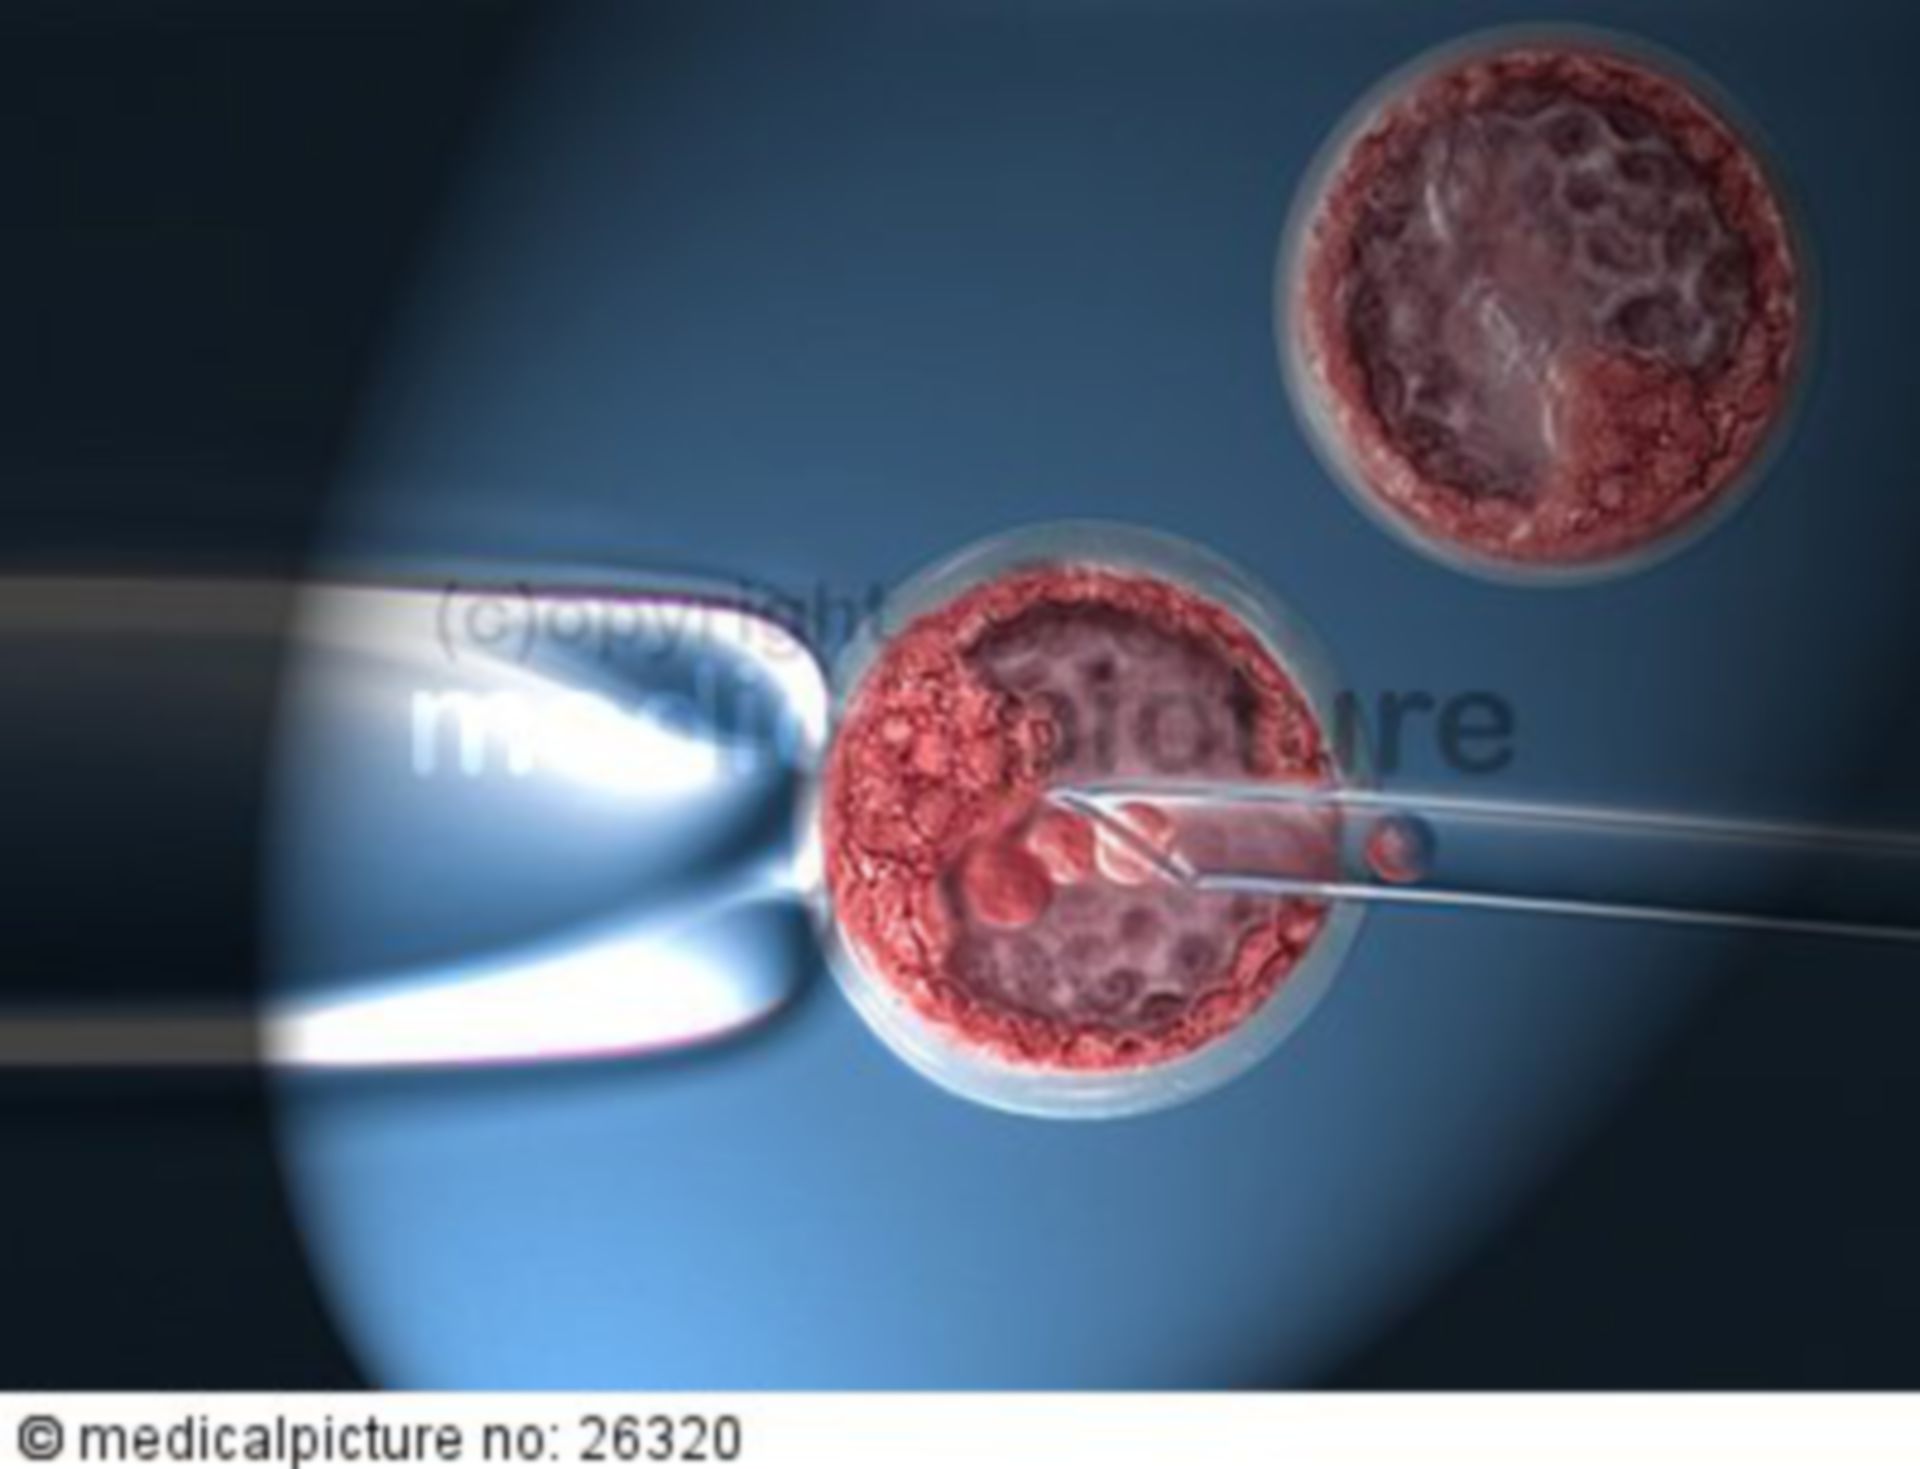  Entnahme von Stammzellen aus einer Blastozyste 
